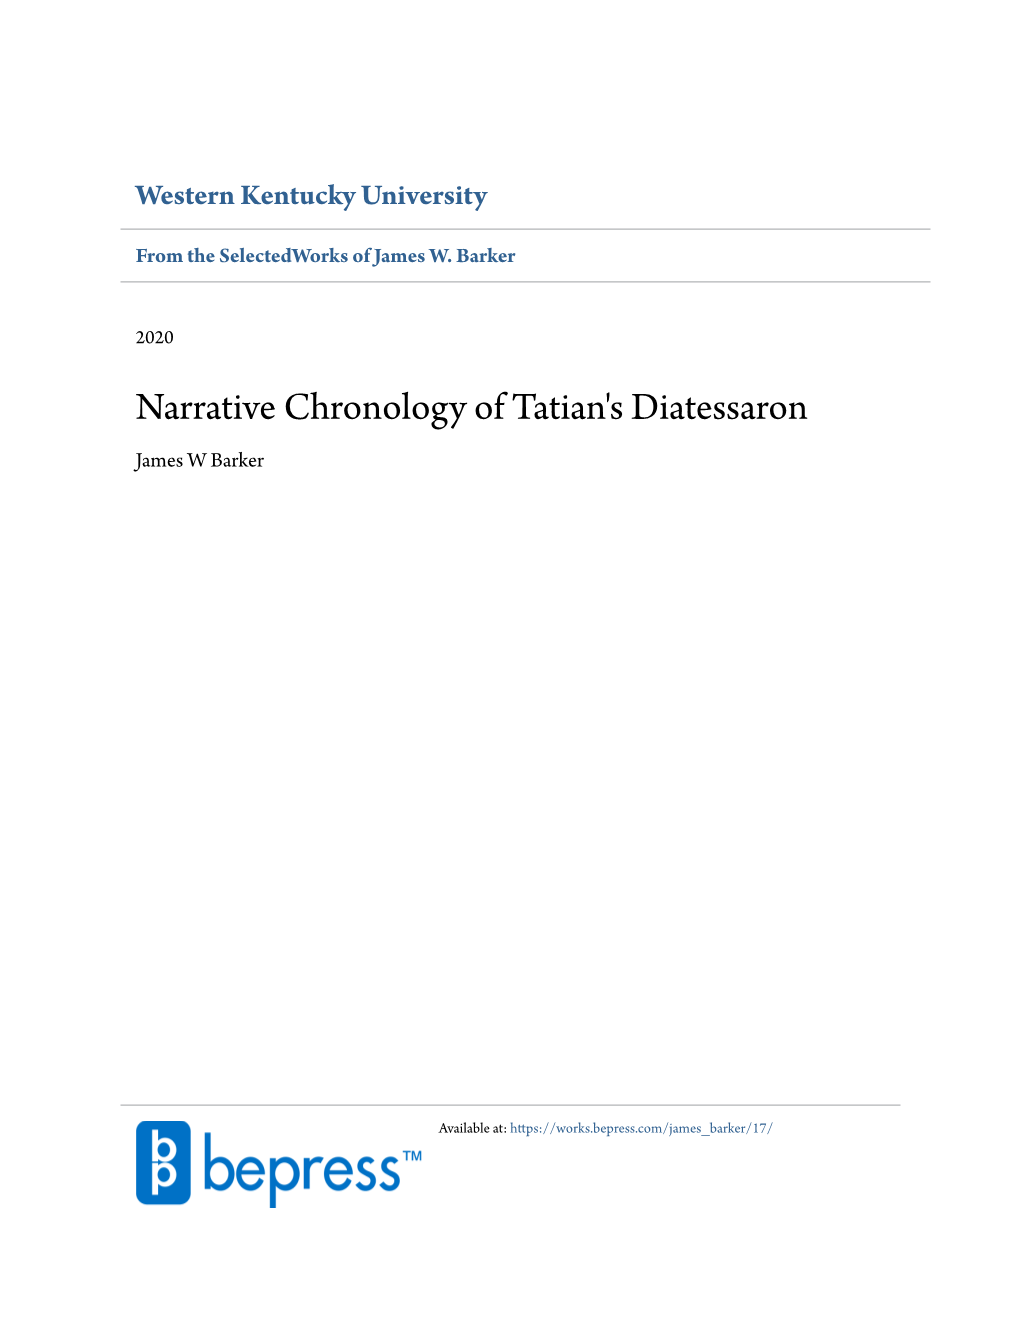 Narrative Chronology of Tatian's Diatessaron James W Barker